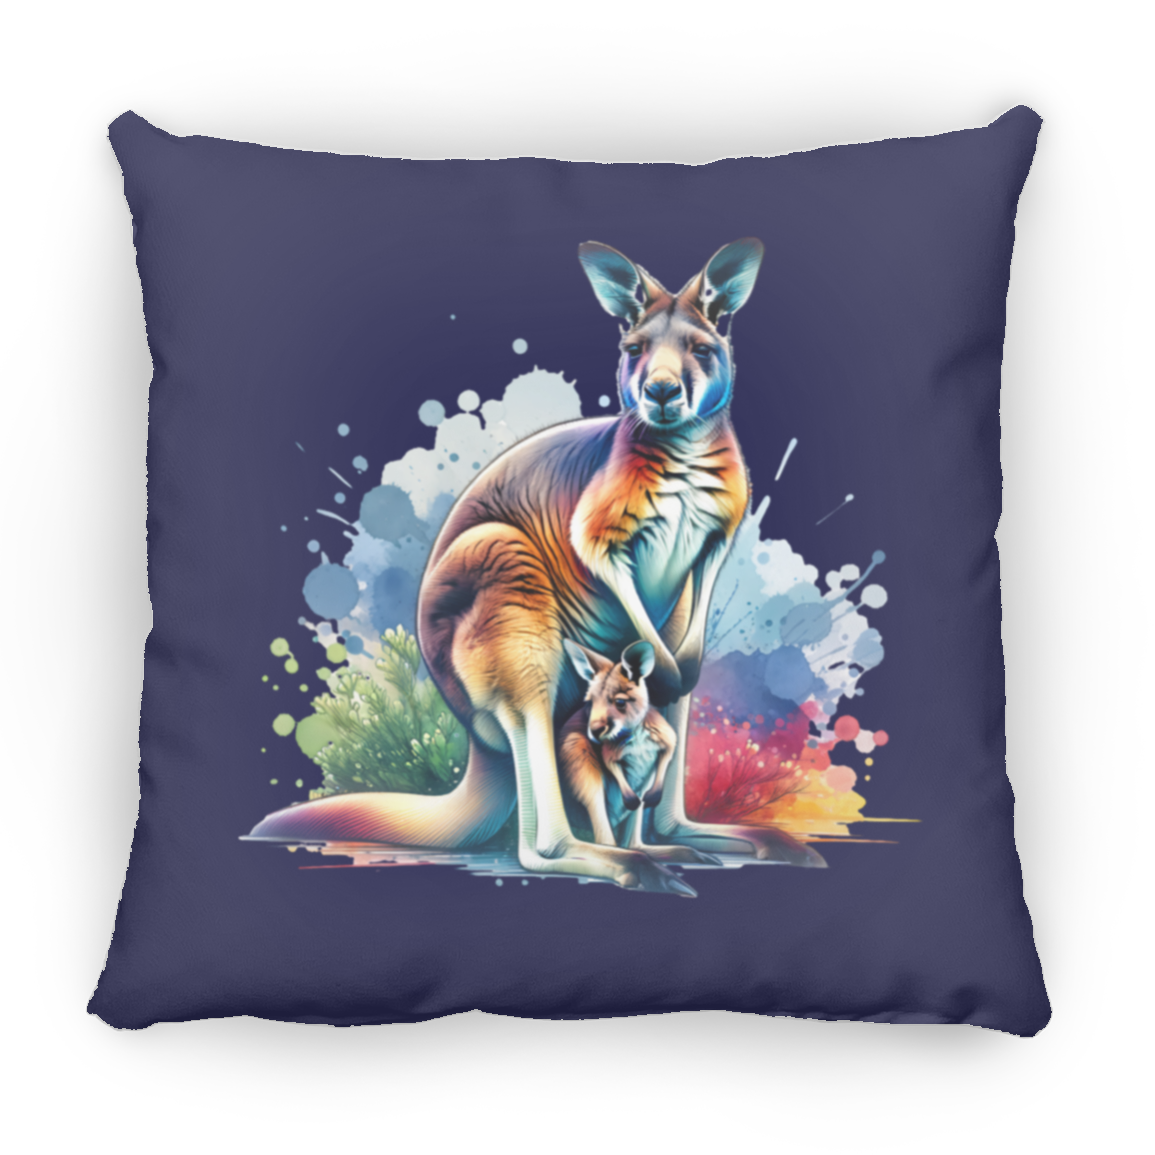 Kangaroo with Joey - Pillows